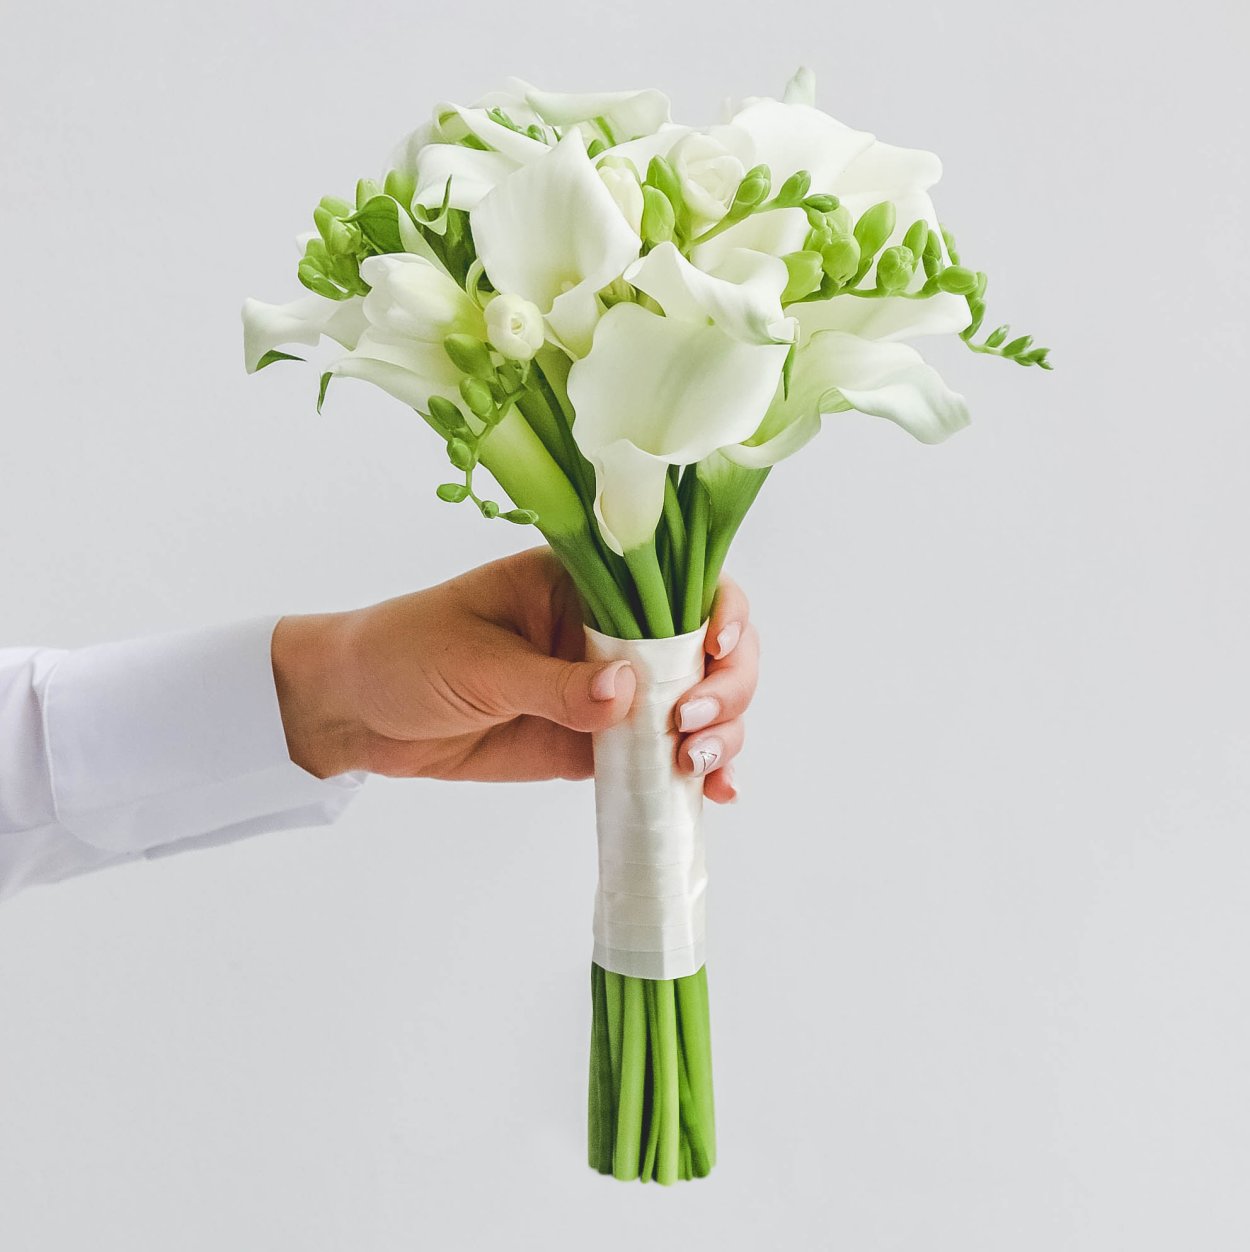 Свадебный букет из белых цветов